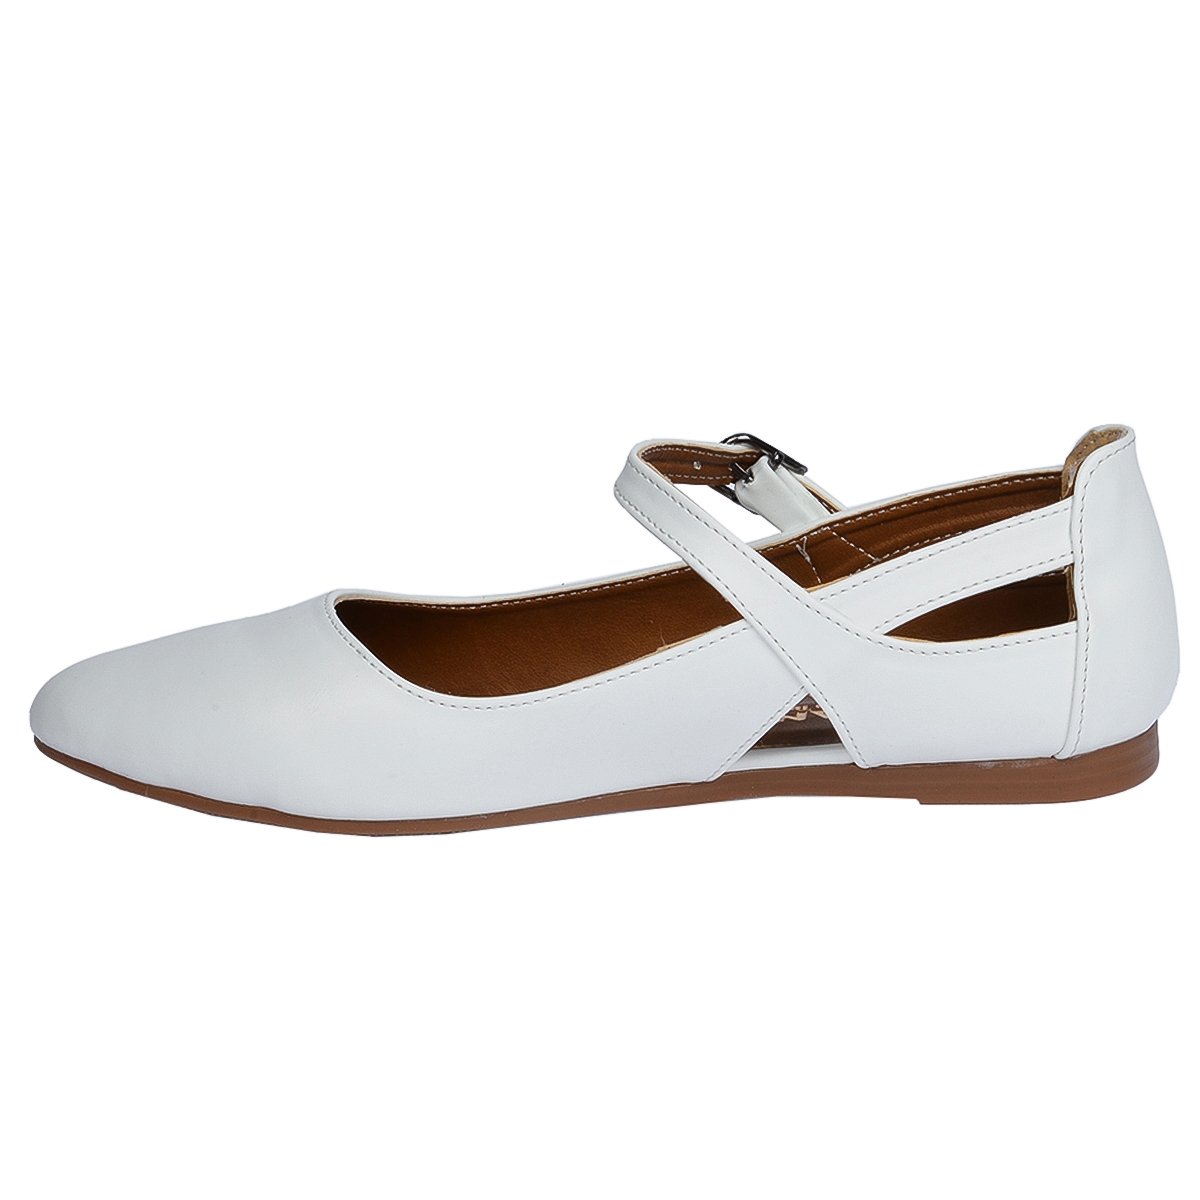 Flo 1920-201 Cilt Sandalet Bayan Babet Ayakkabı Beyaz. 4